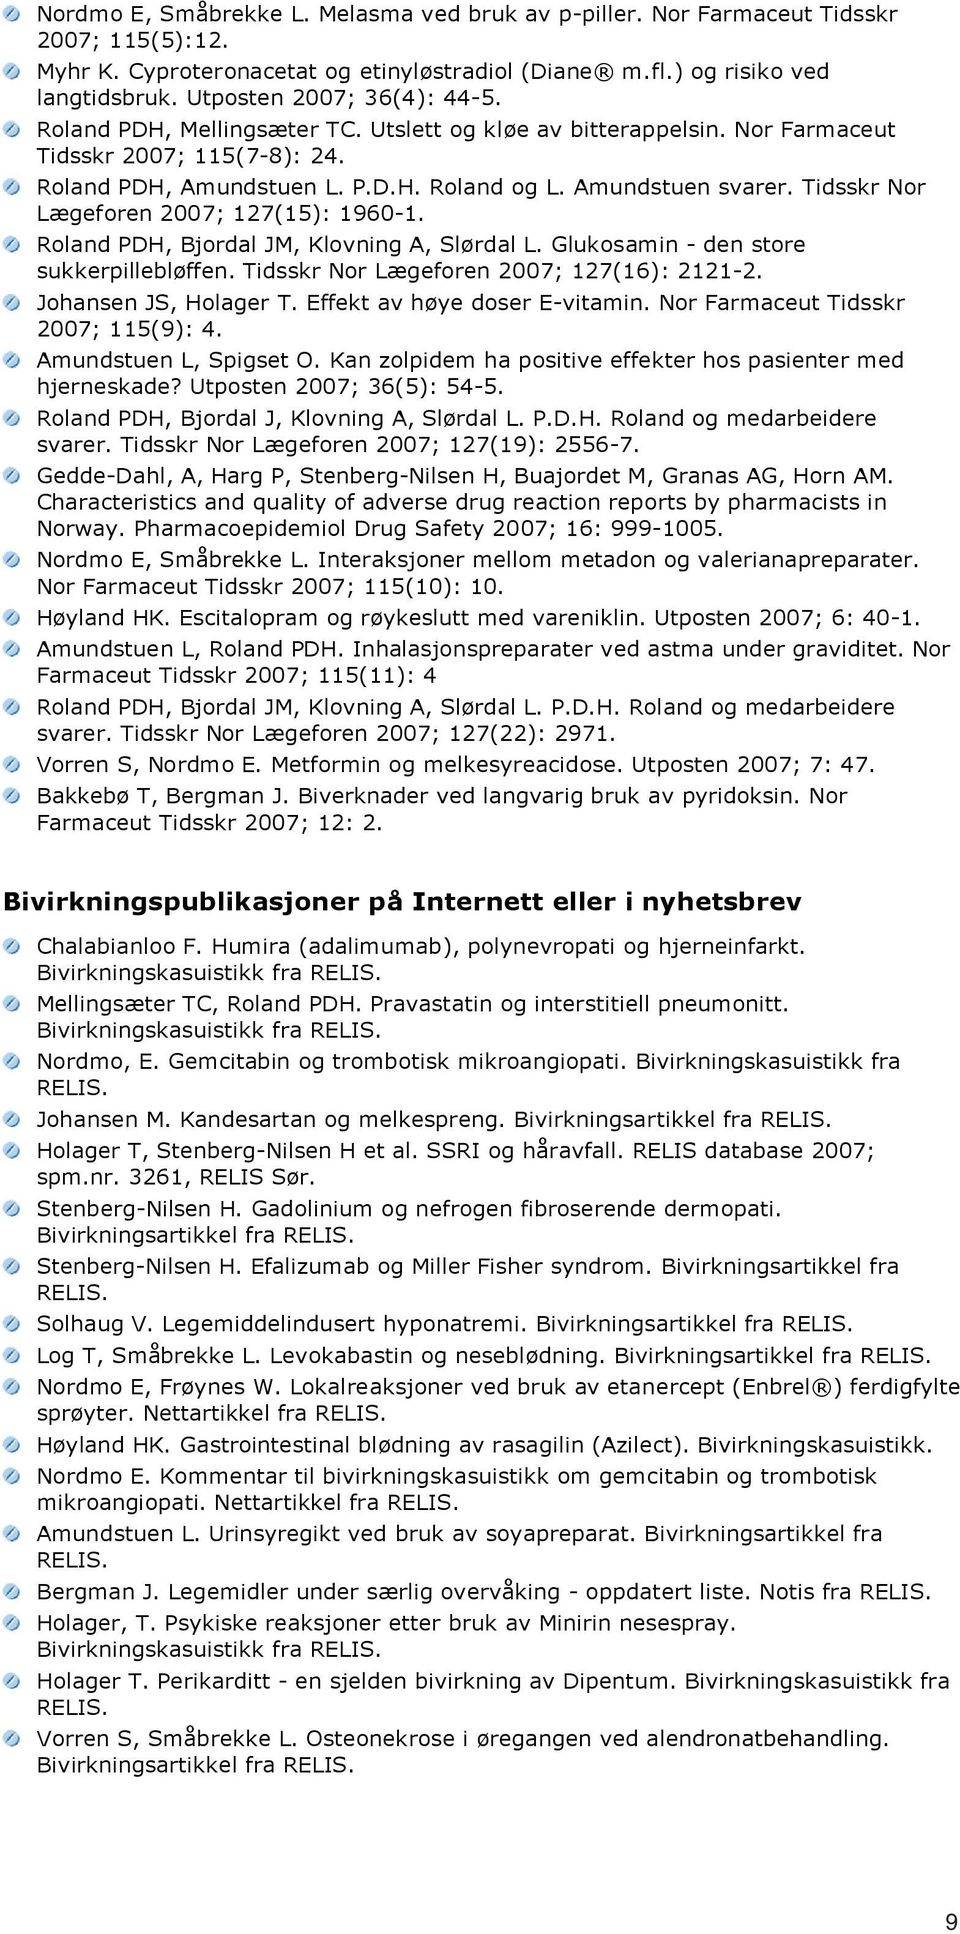 Tidsskr Nor Lægeforen 2007; 127(15): 1960-1. Roland PDH, Bjordal JM, Klovning A, Slørdal L. Glukosamin - den store sukkerpillebløffen. Tidsskr Nor Lægeforen 2007; 127(16): 2121-2.